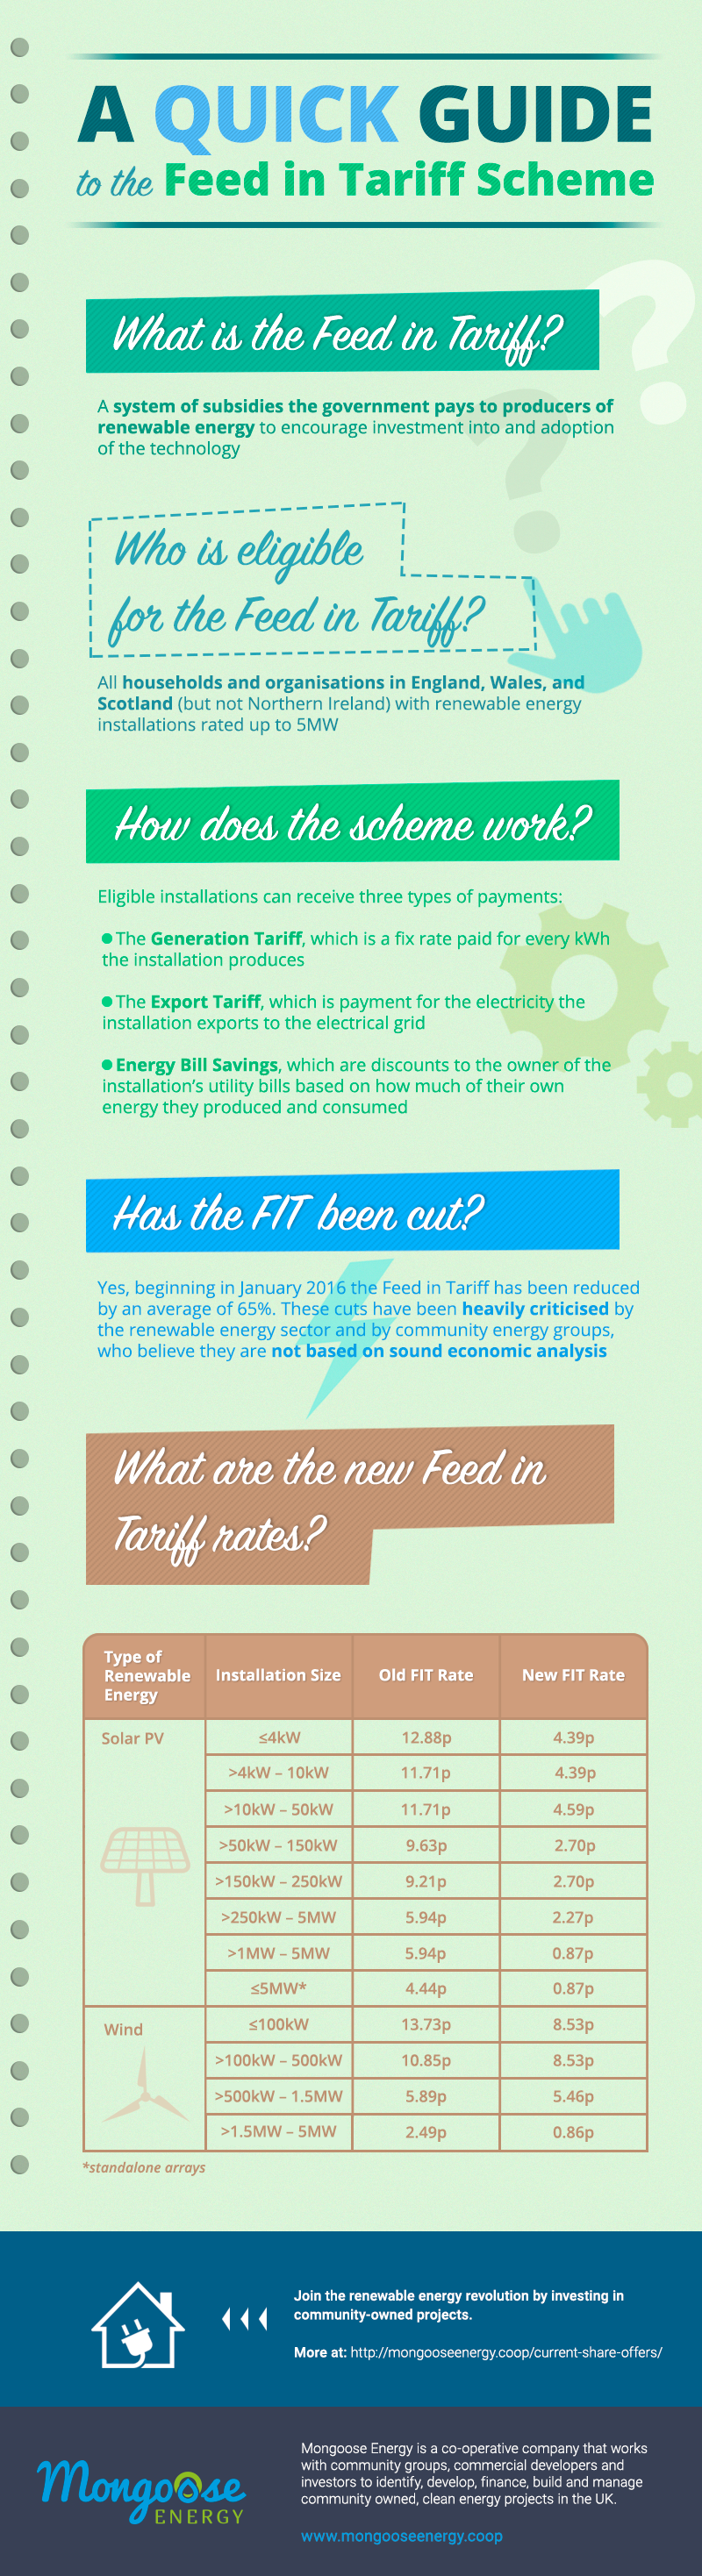 Diseño de infografía: "A Quick Guide to the Feed in Tariff Scheme" -1